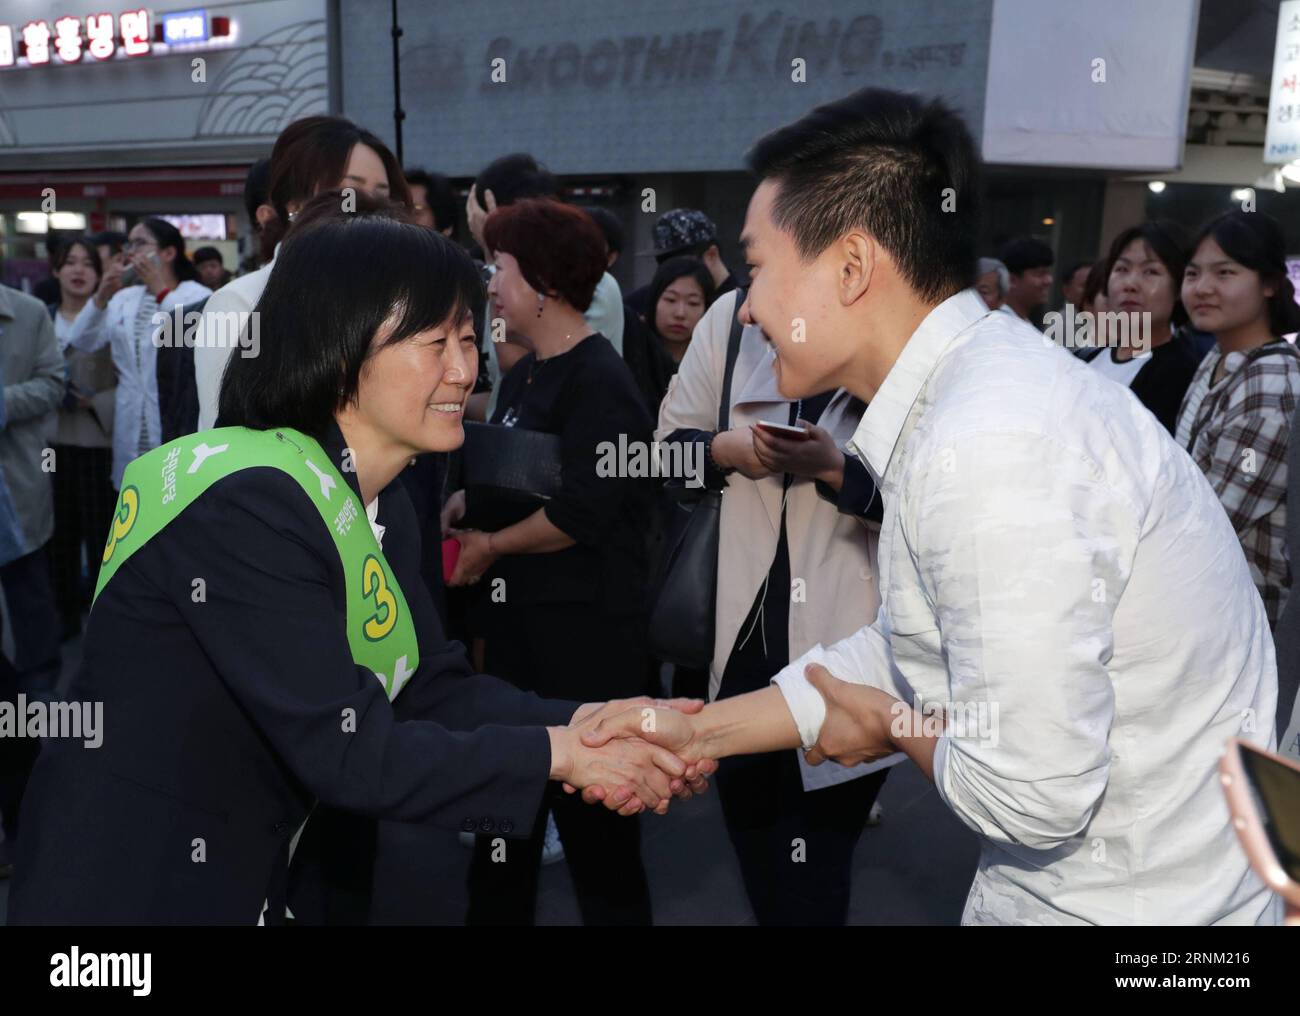 (170502) -- SÉOUL, le 2 mai 2017 -- Kim mi-kyung (à gauche), épouse d'Ahn Cheol-soo, candidate du Parti populaire, serre la main de partisans lors d'une campagne pour l'élection présidentielle à Séoul, Corée du Sud, le 2 mai 2017. L'élection présidentielle sud-coréenne aura lieu le 9 mai. ) (gl) CORÉE DU SUD-SÉOUL-AHN CHEOL-SOO-WIFE LeexSang-ho PUBLICATIONxNOTxINxCHN Séoul Mai 2 2017 Kim mi Kyung l épouse de Ahn Cheol Soo candidat PESIDENTIAL des célébrités S Party serre la main de partisans lors d'une campagne pour l'ÉLECTION présidentielle à Séoul en Corée du Sud le 2 201 mai Banque D'Images